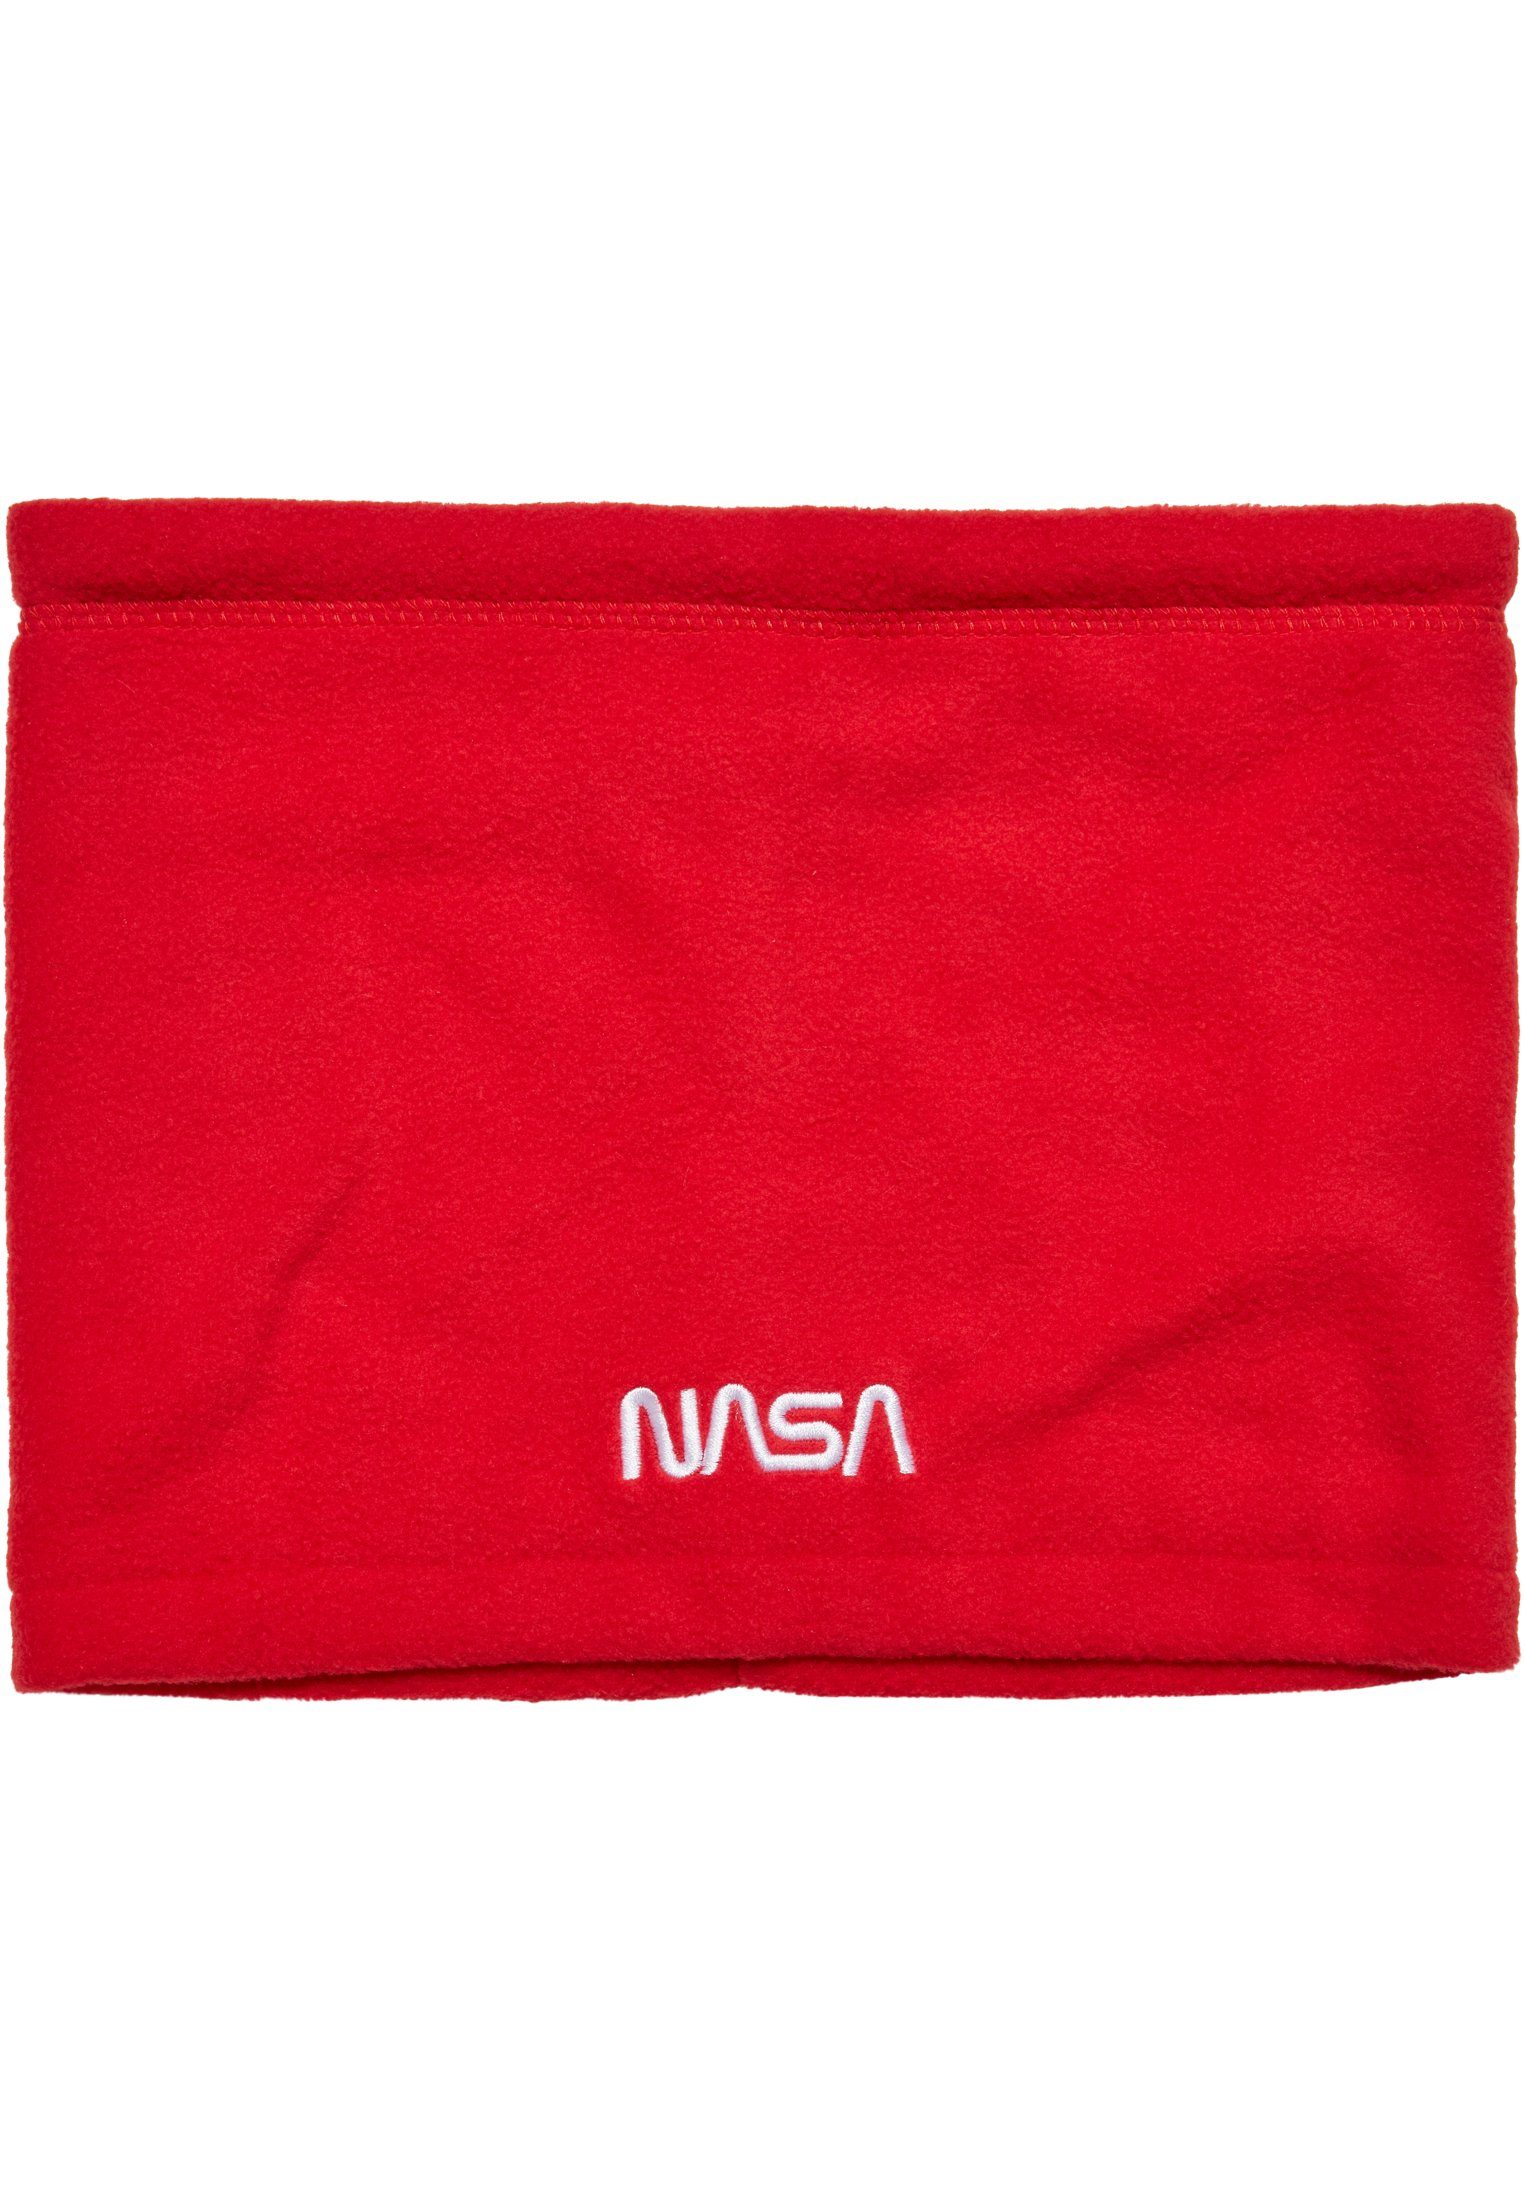 MisterTee Set NASA Baumwollhandschuhe Fleece Accessoires